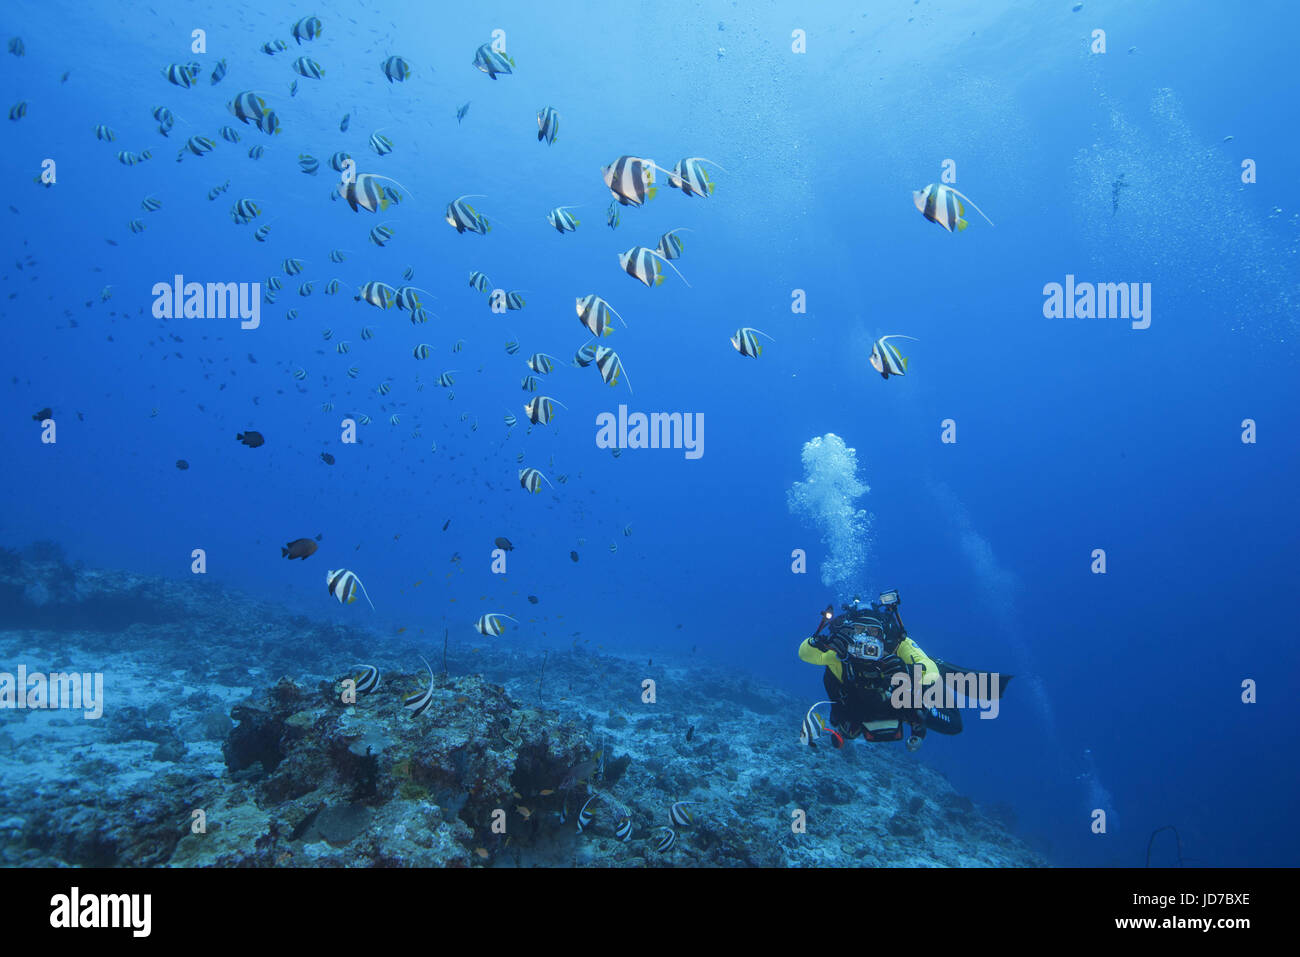 Marzo 24, 2017 - Maschio scuba diver shooting school di scolarizzazione bannerfish (Heniochus diphreutes) sulla barriera corallina in acqua blu, Oceano Indiano, Maldive Credito: Andrey Nekrasov/ZUMA filo/ZUMAPRESS.com/Alamy Live News Foto Stock